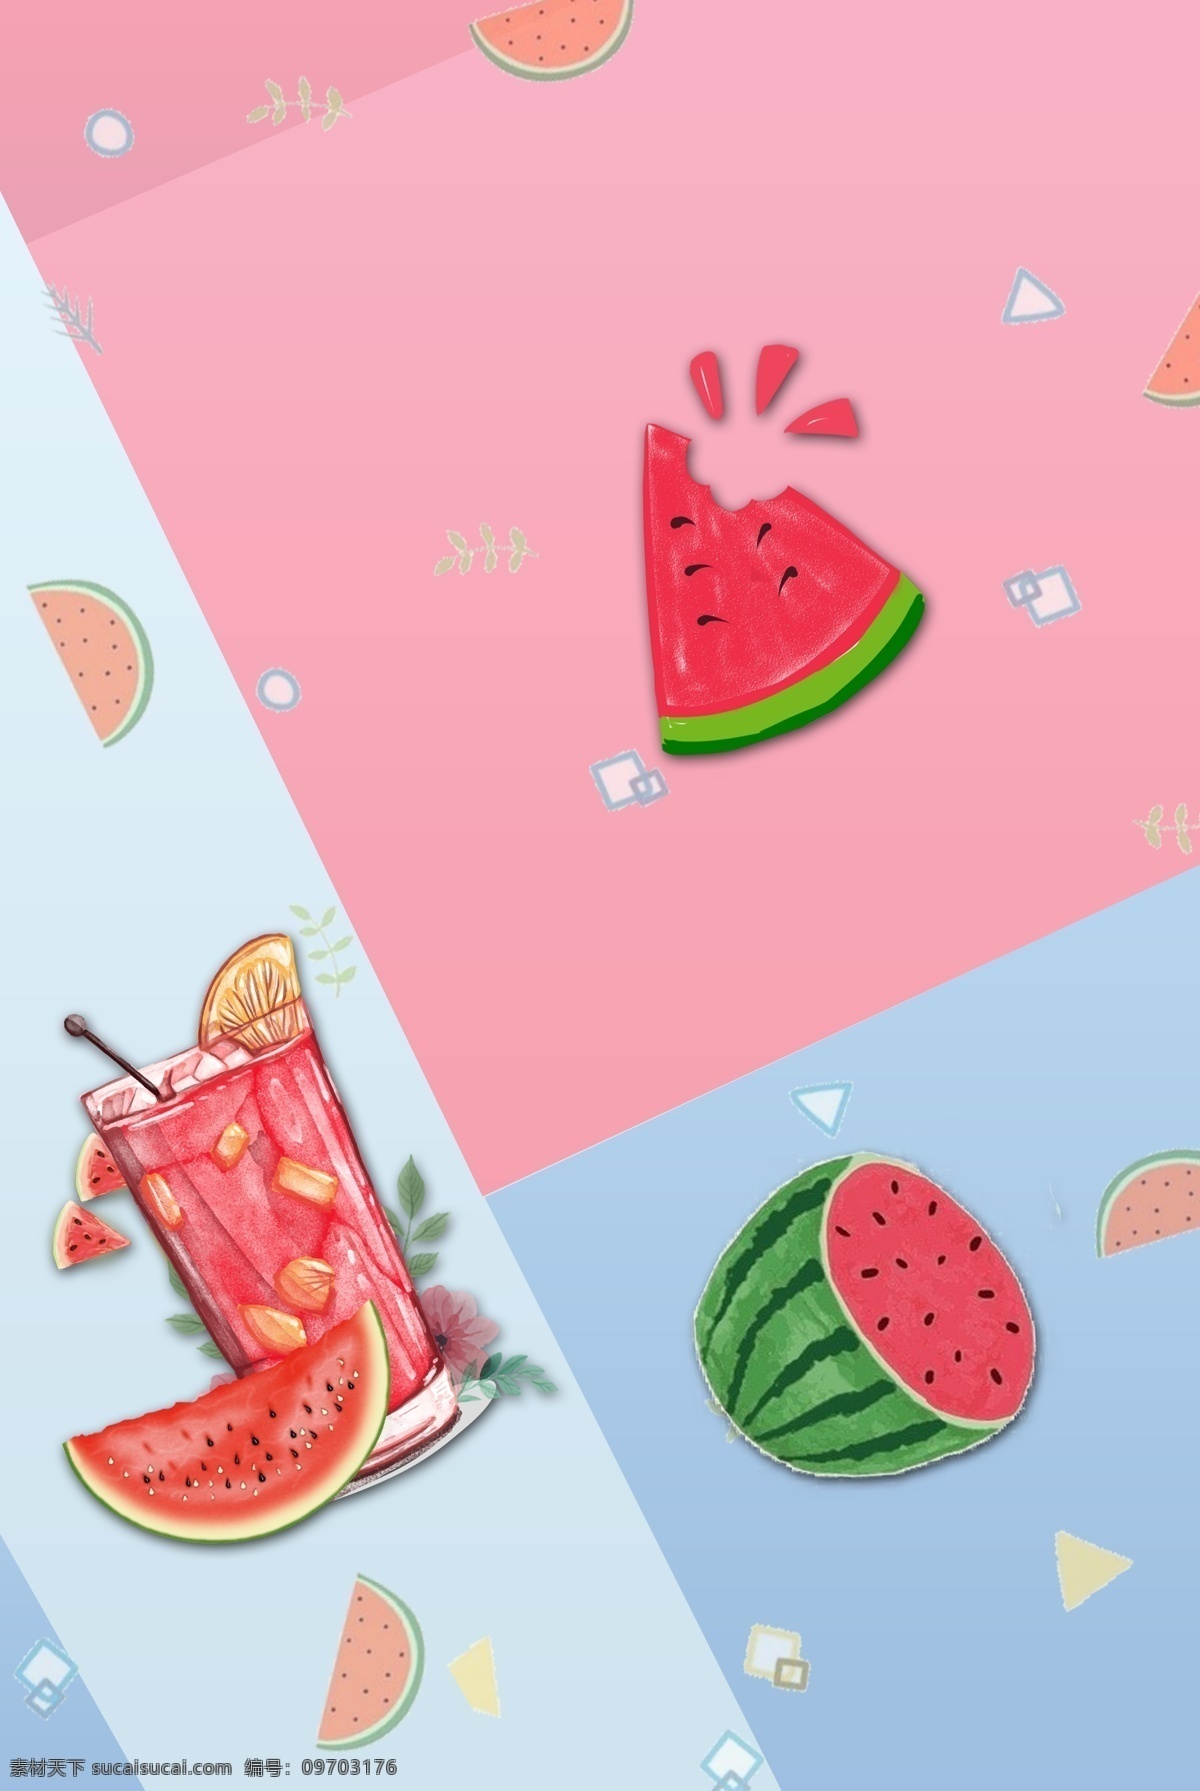 简单 水果 西瓜 主题 背景 夏天 夏季 清爽 水货 果蔬 新鲜 五月水果 冰镇 芒果